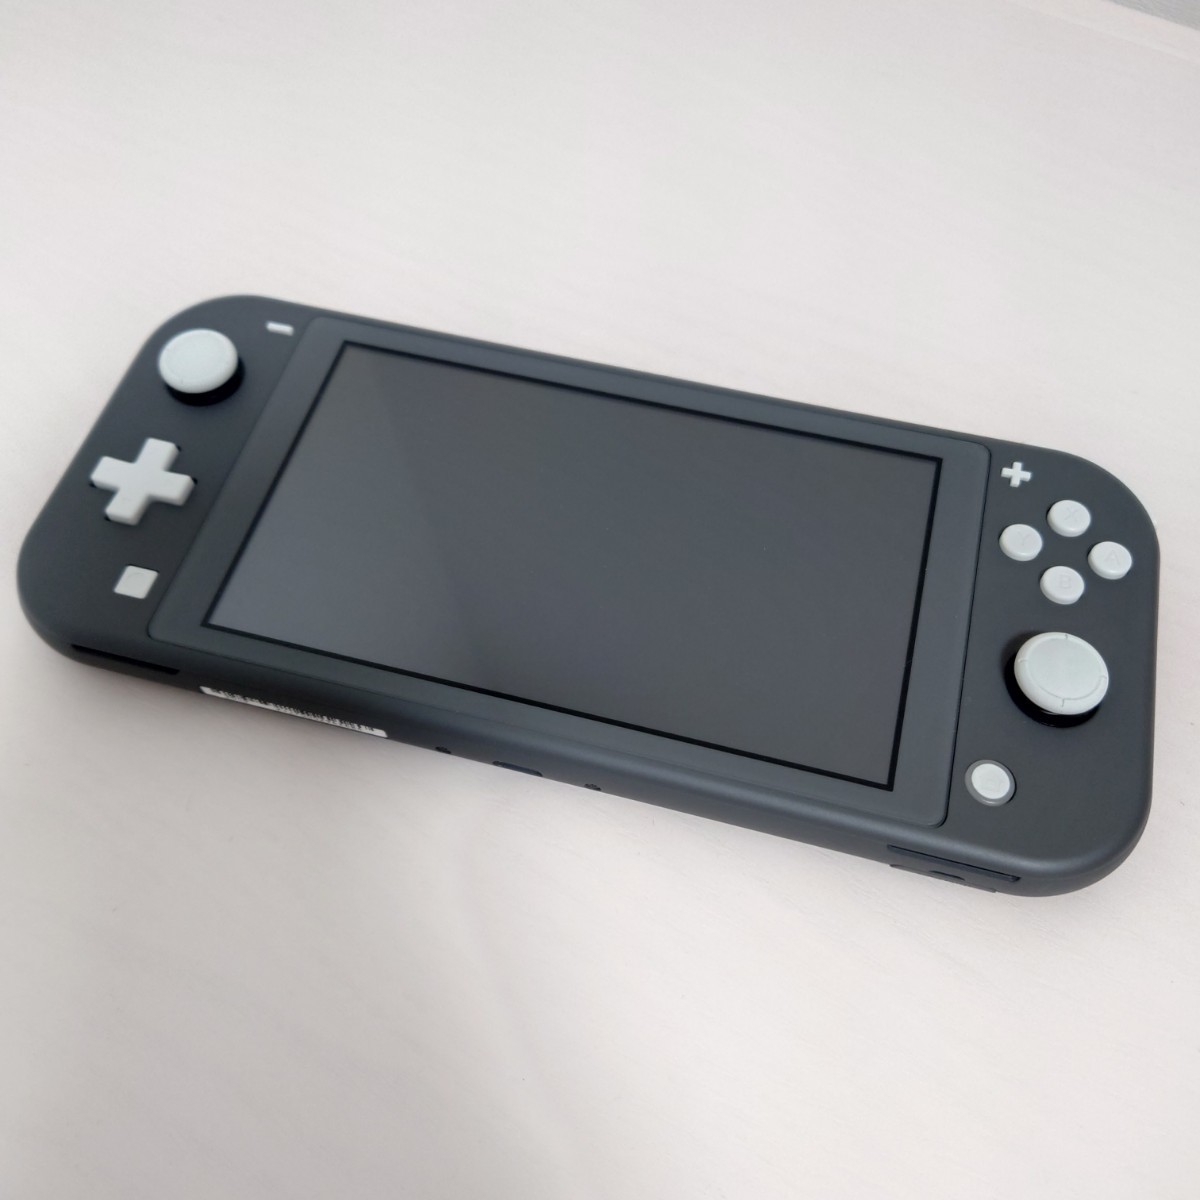 ニンテンドースイッチライト 本体 Nintendo Switch Lite 本体 グレー